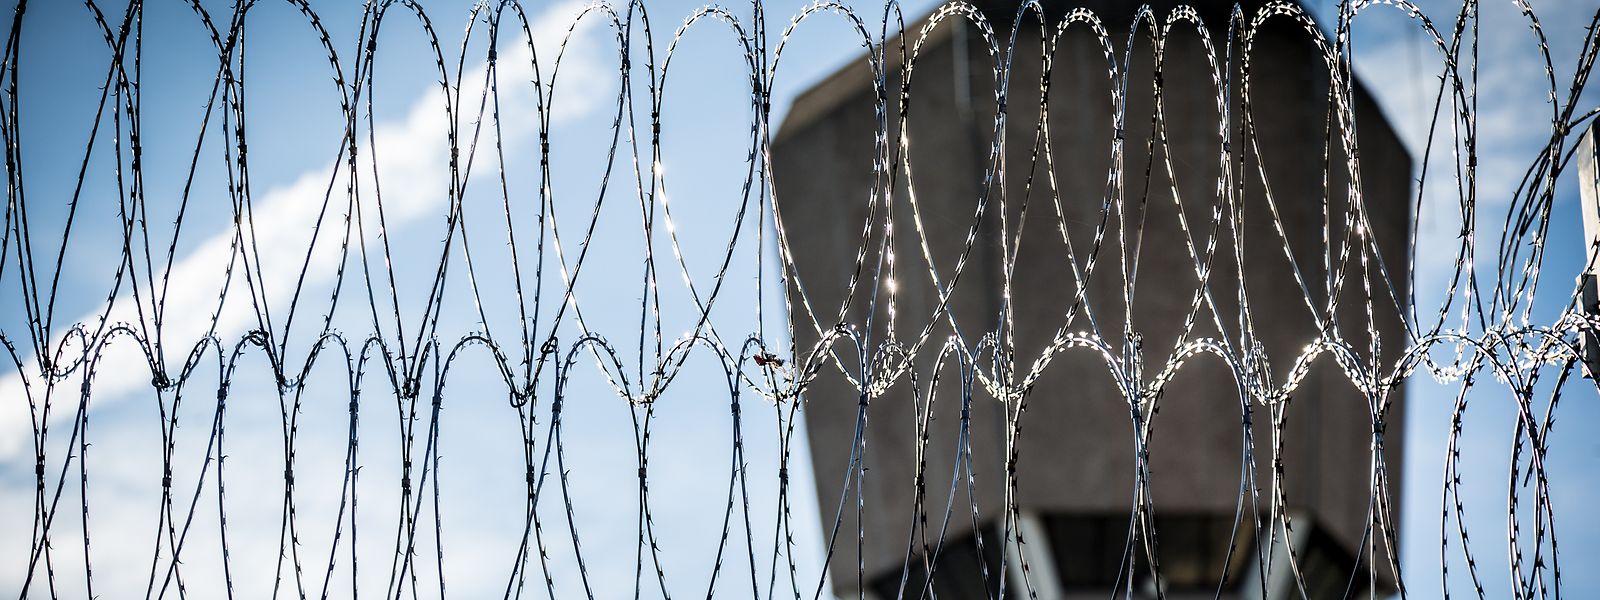 684 Häftlinge wurden zum 1. Januar 2018 in Luxemburg gezählt. Die meisten von ihnen waren in der geschlossenen Strafvollzugsanstalt in Schrassig untergebracht.